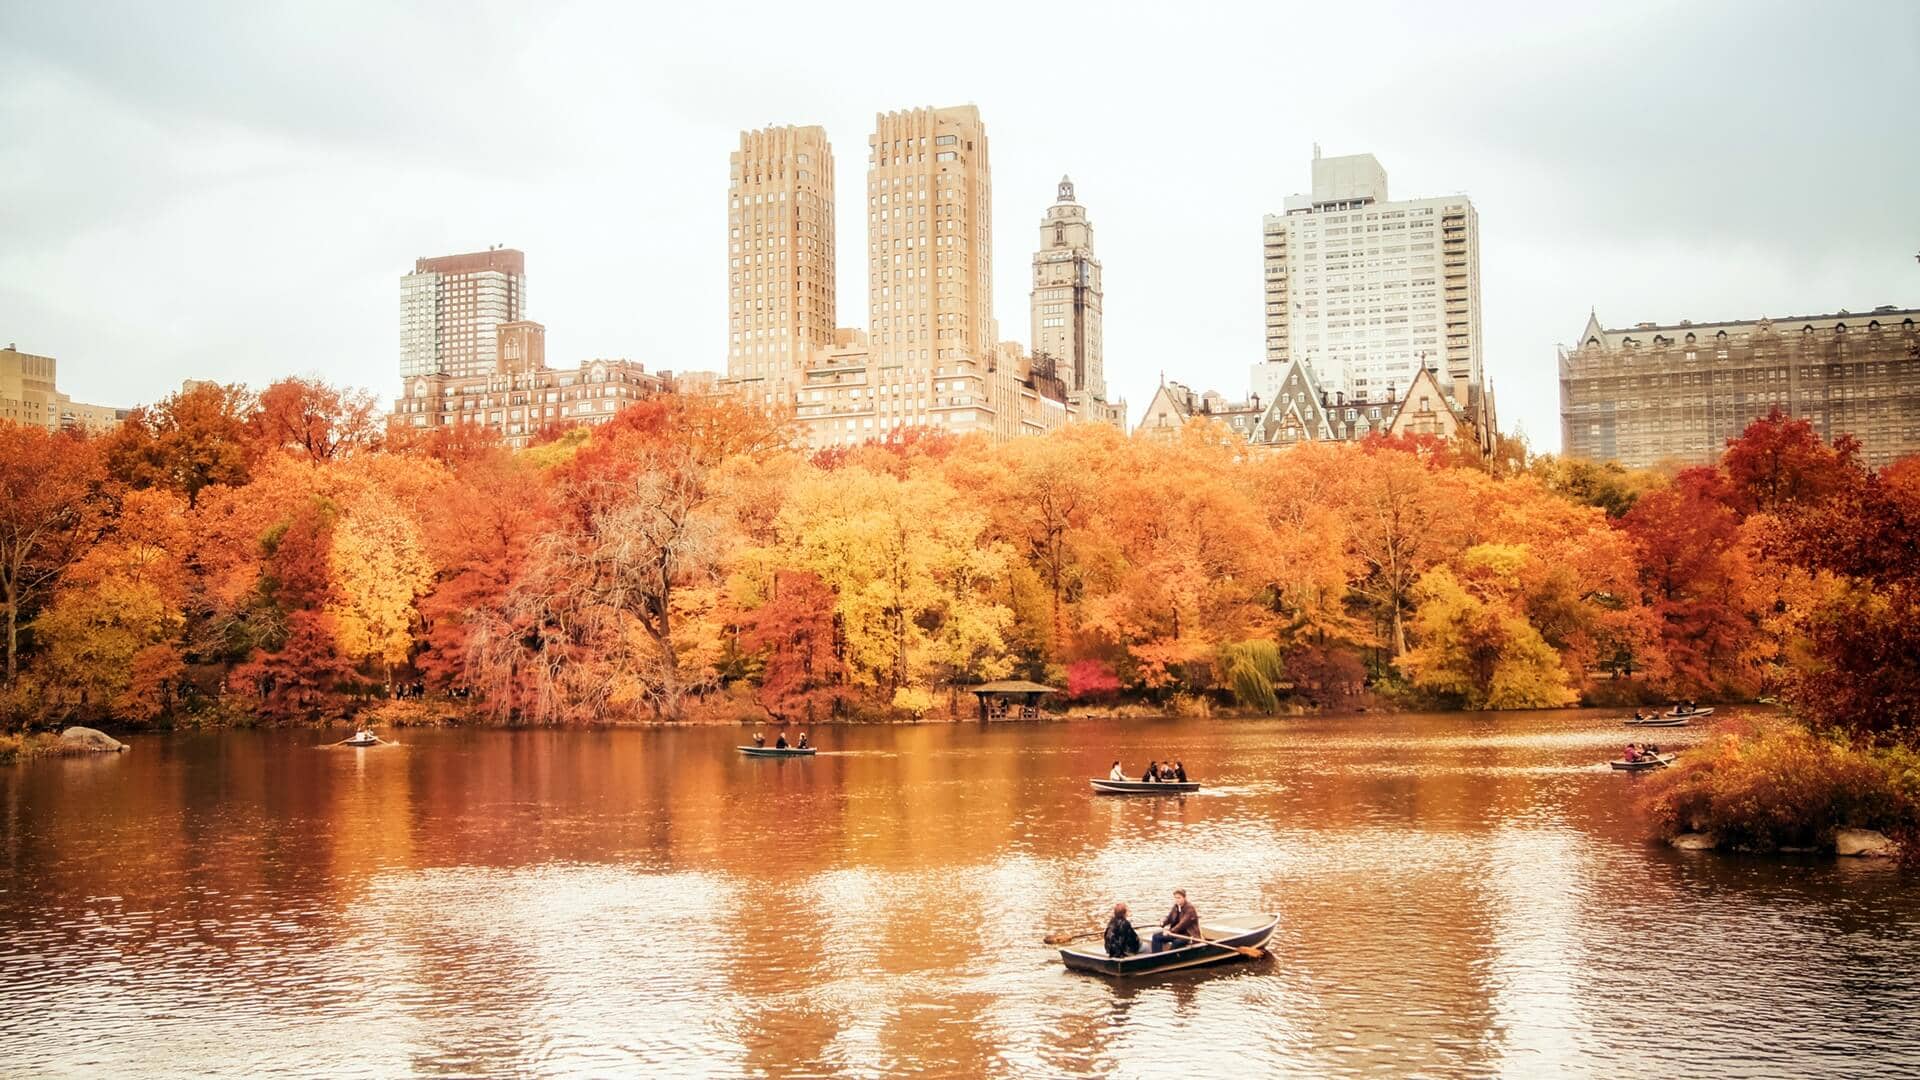 Central Park Nova York: da arte de flanar o Central Park no outono